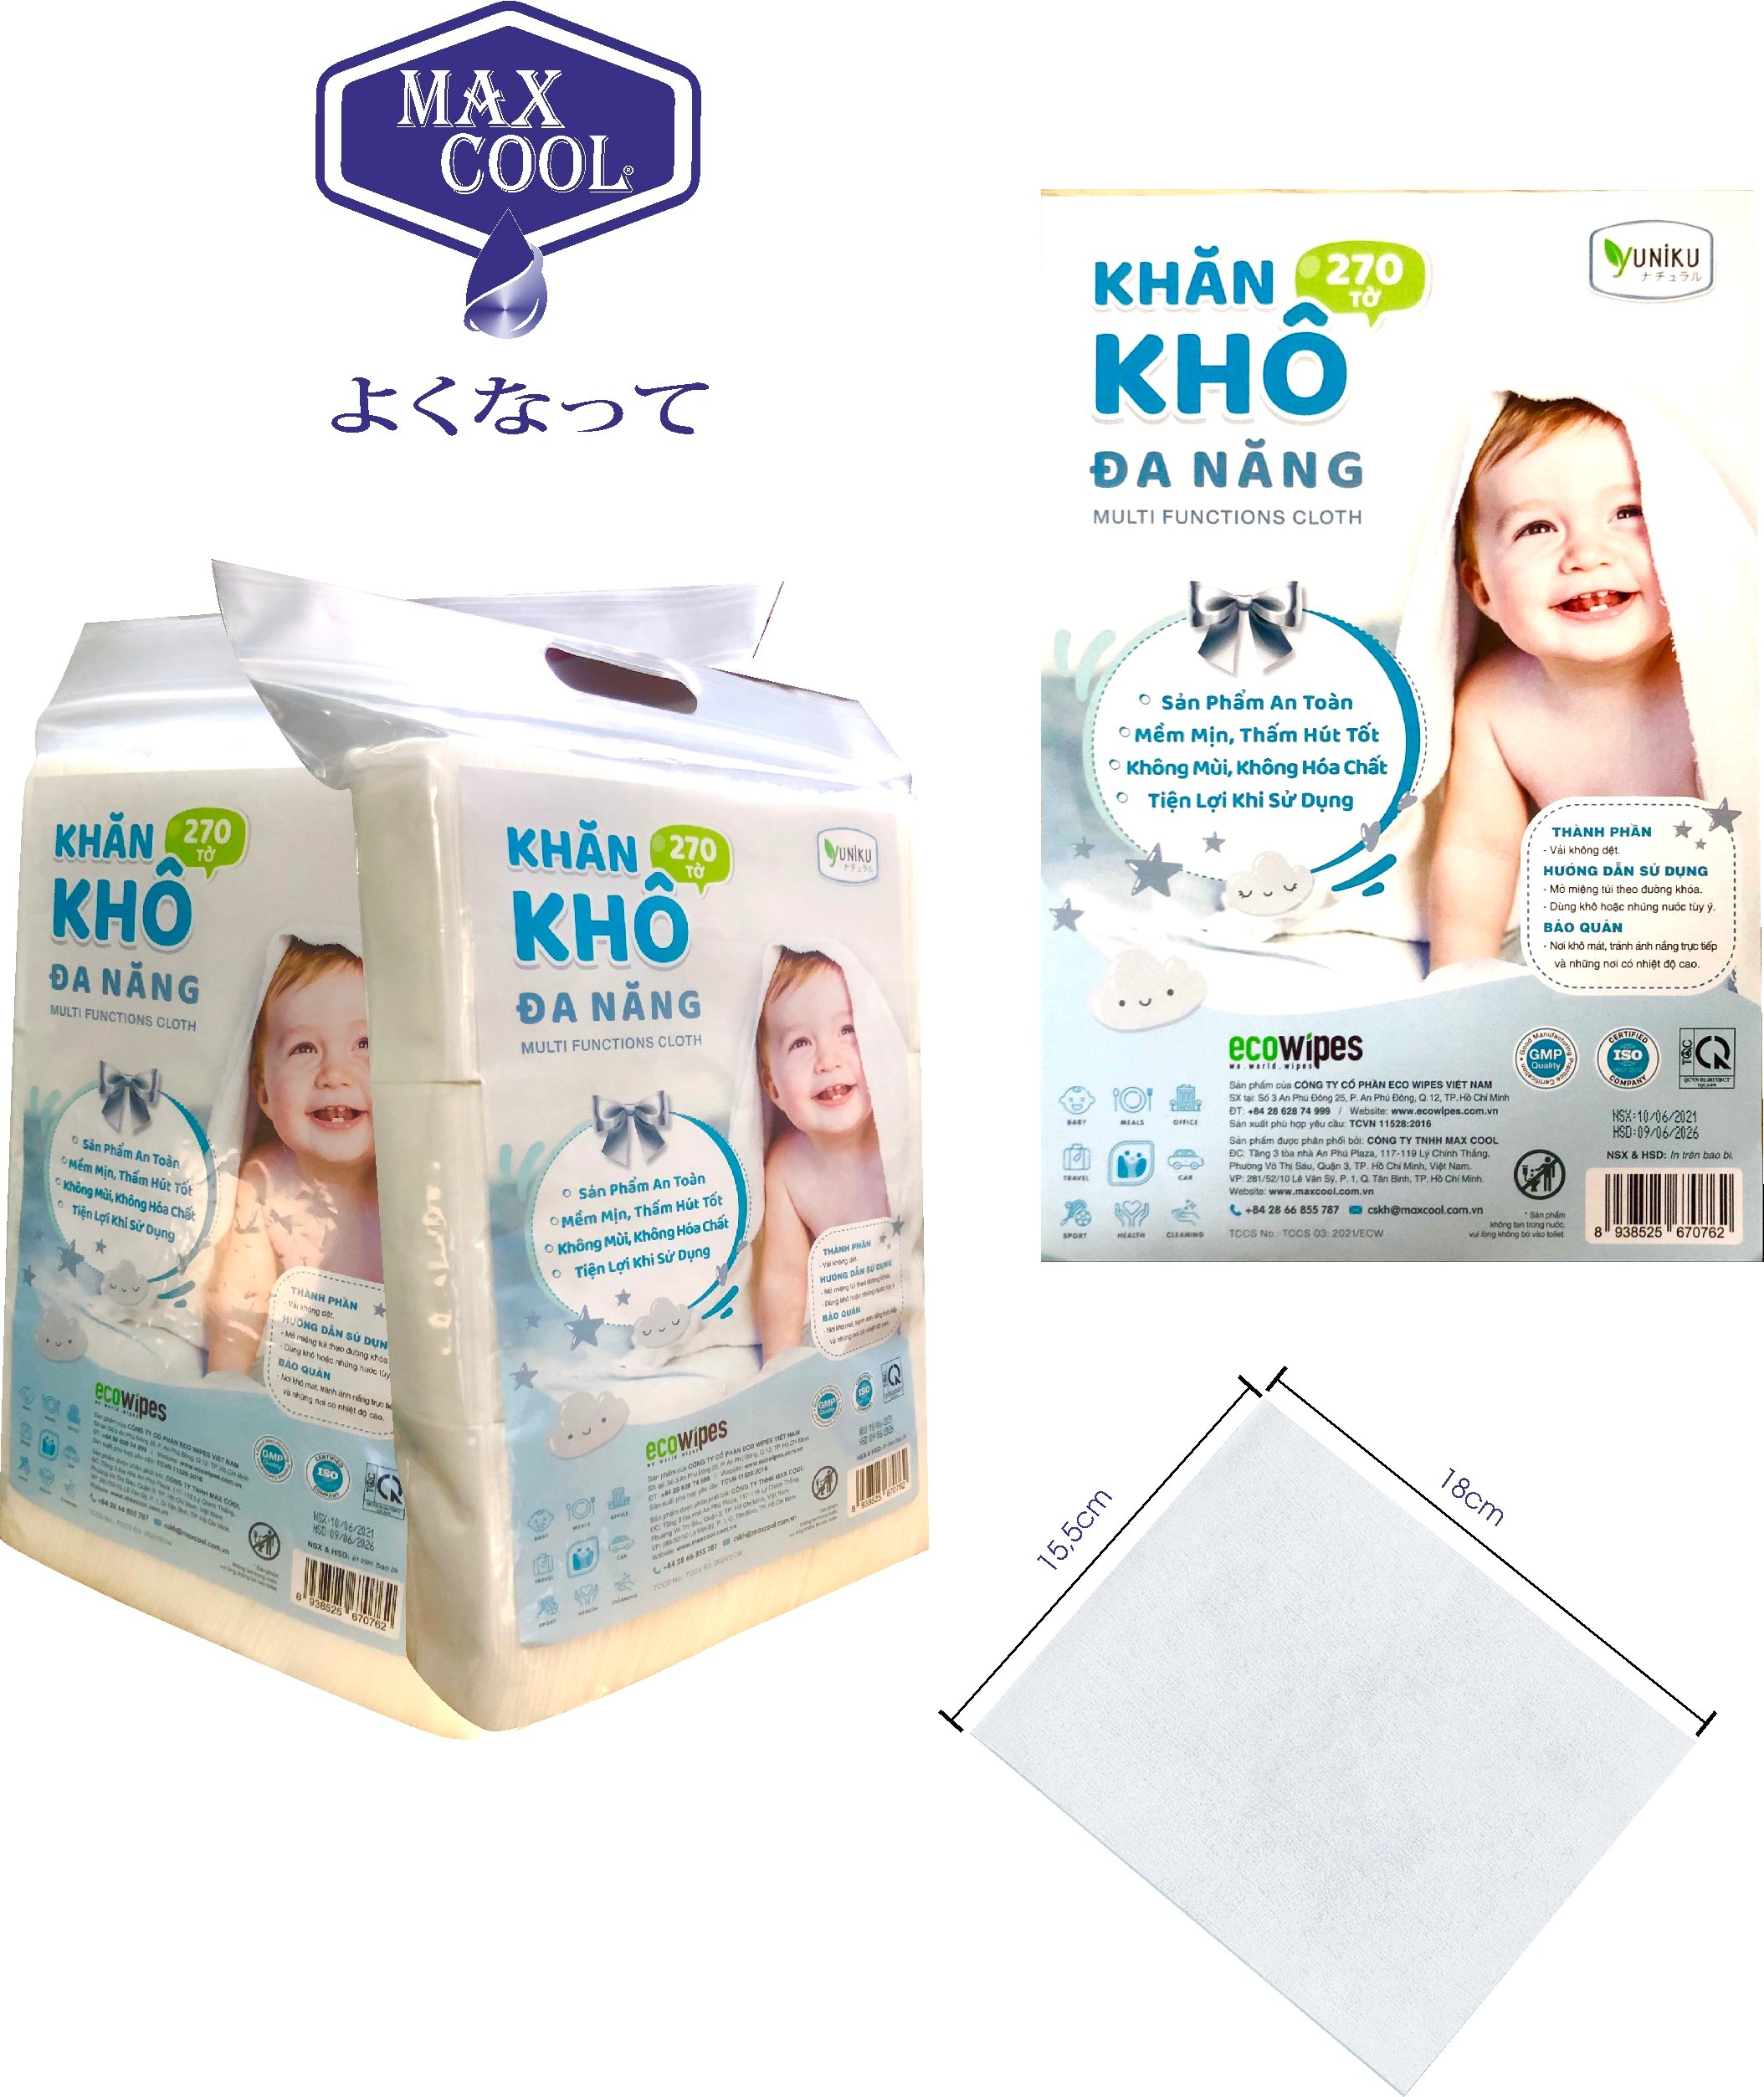 COMBO 3 GÓI KHĂN KHÔ ĐA NĂNG YUNIKU - 270 TỜ - Dùng thay khăn sữa, thay tả, vệ sinh cho bé, tẩy trang....